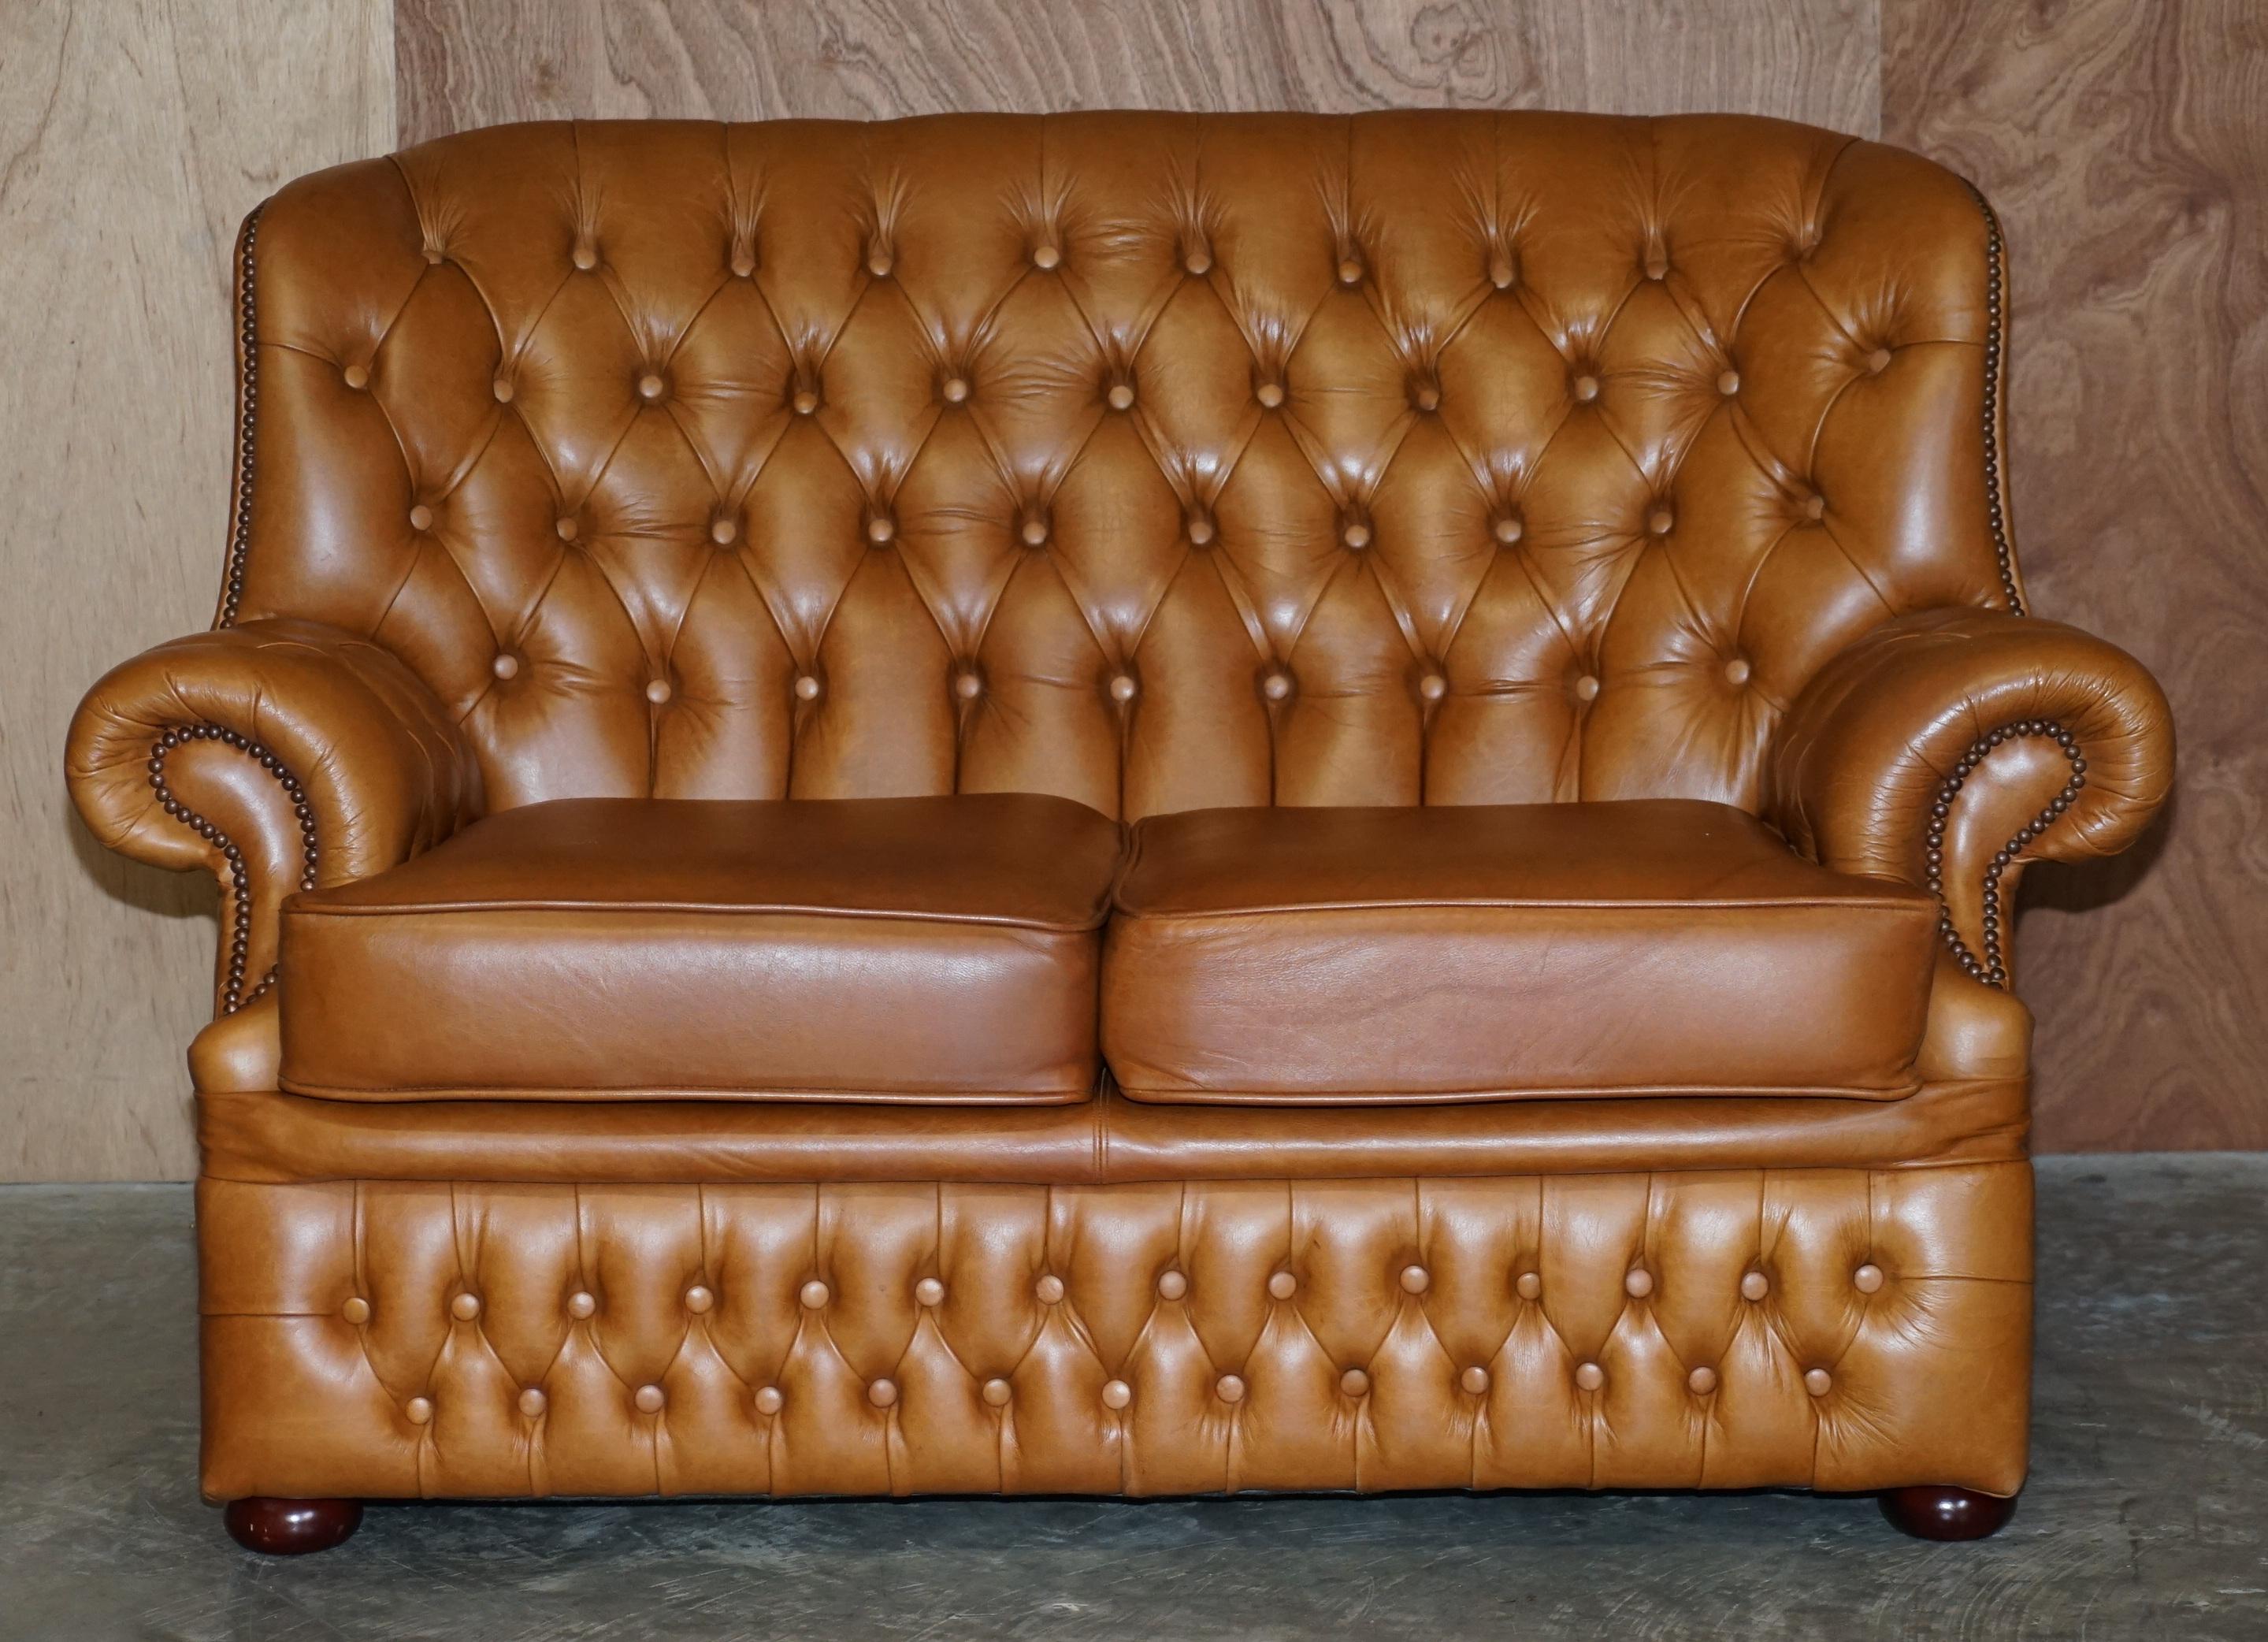 Nous avons le plaisir de vous proposer ce très beau canapé Chesterfield en cuir marron foncé

C'est un canapé très confortable et de belle apparence, il a un dossier haut qui permet de reposer tout le dos, y compris la tête. La sellerie est très